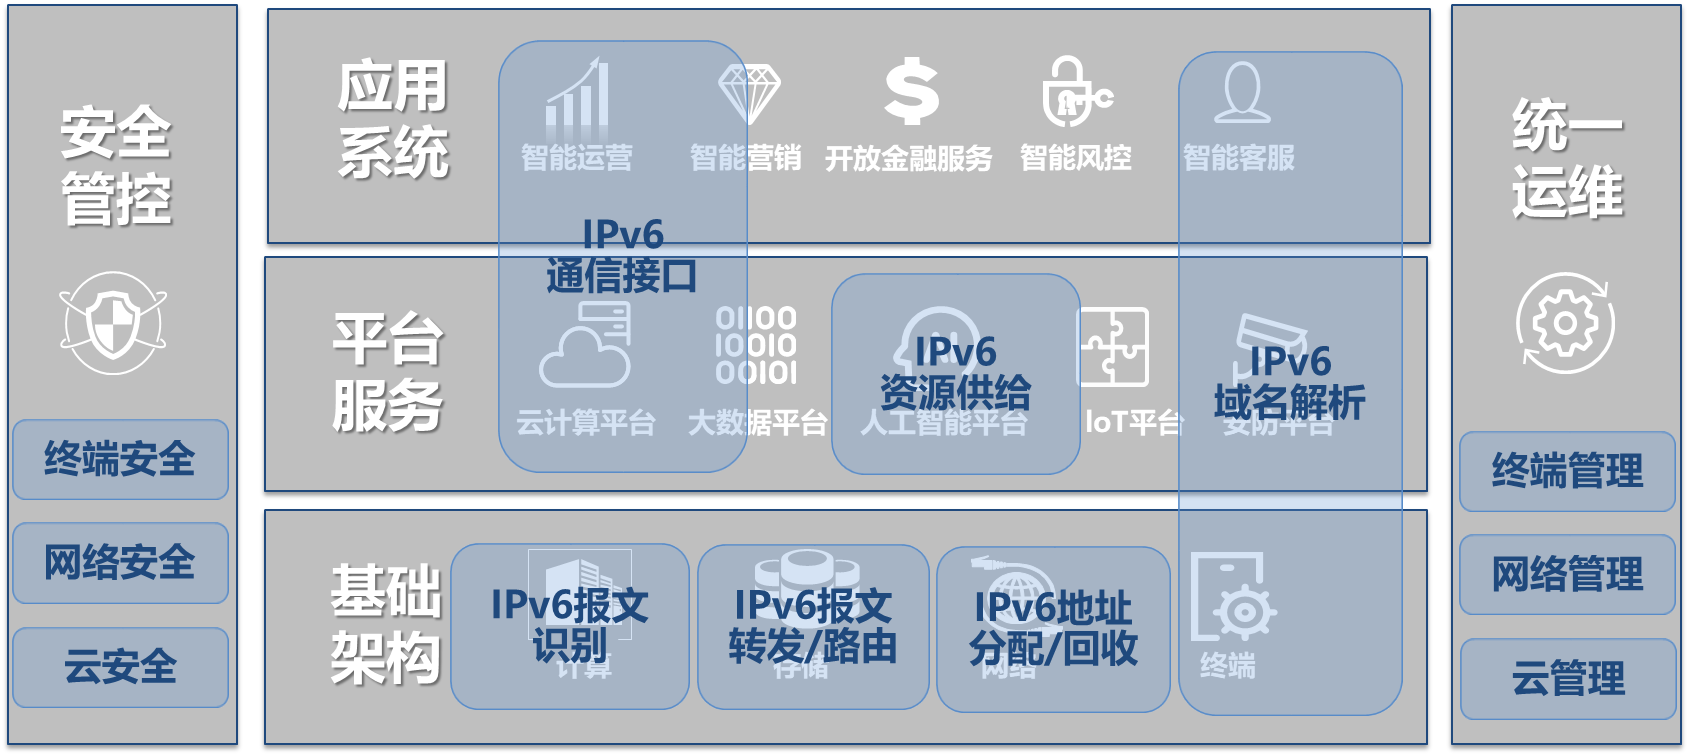 互联网应用系统及基础设施IPv6改造和实践——中国建设银行股份有限公司IPv国内服务器排名6规模部署和应用案例